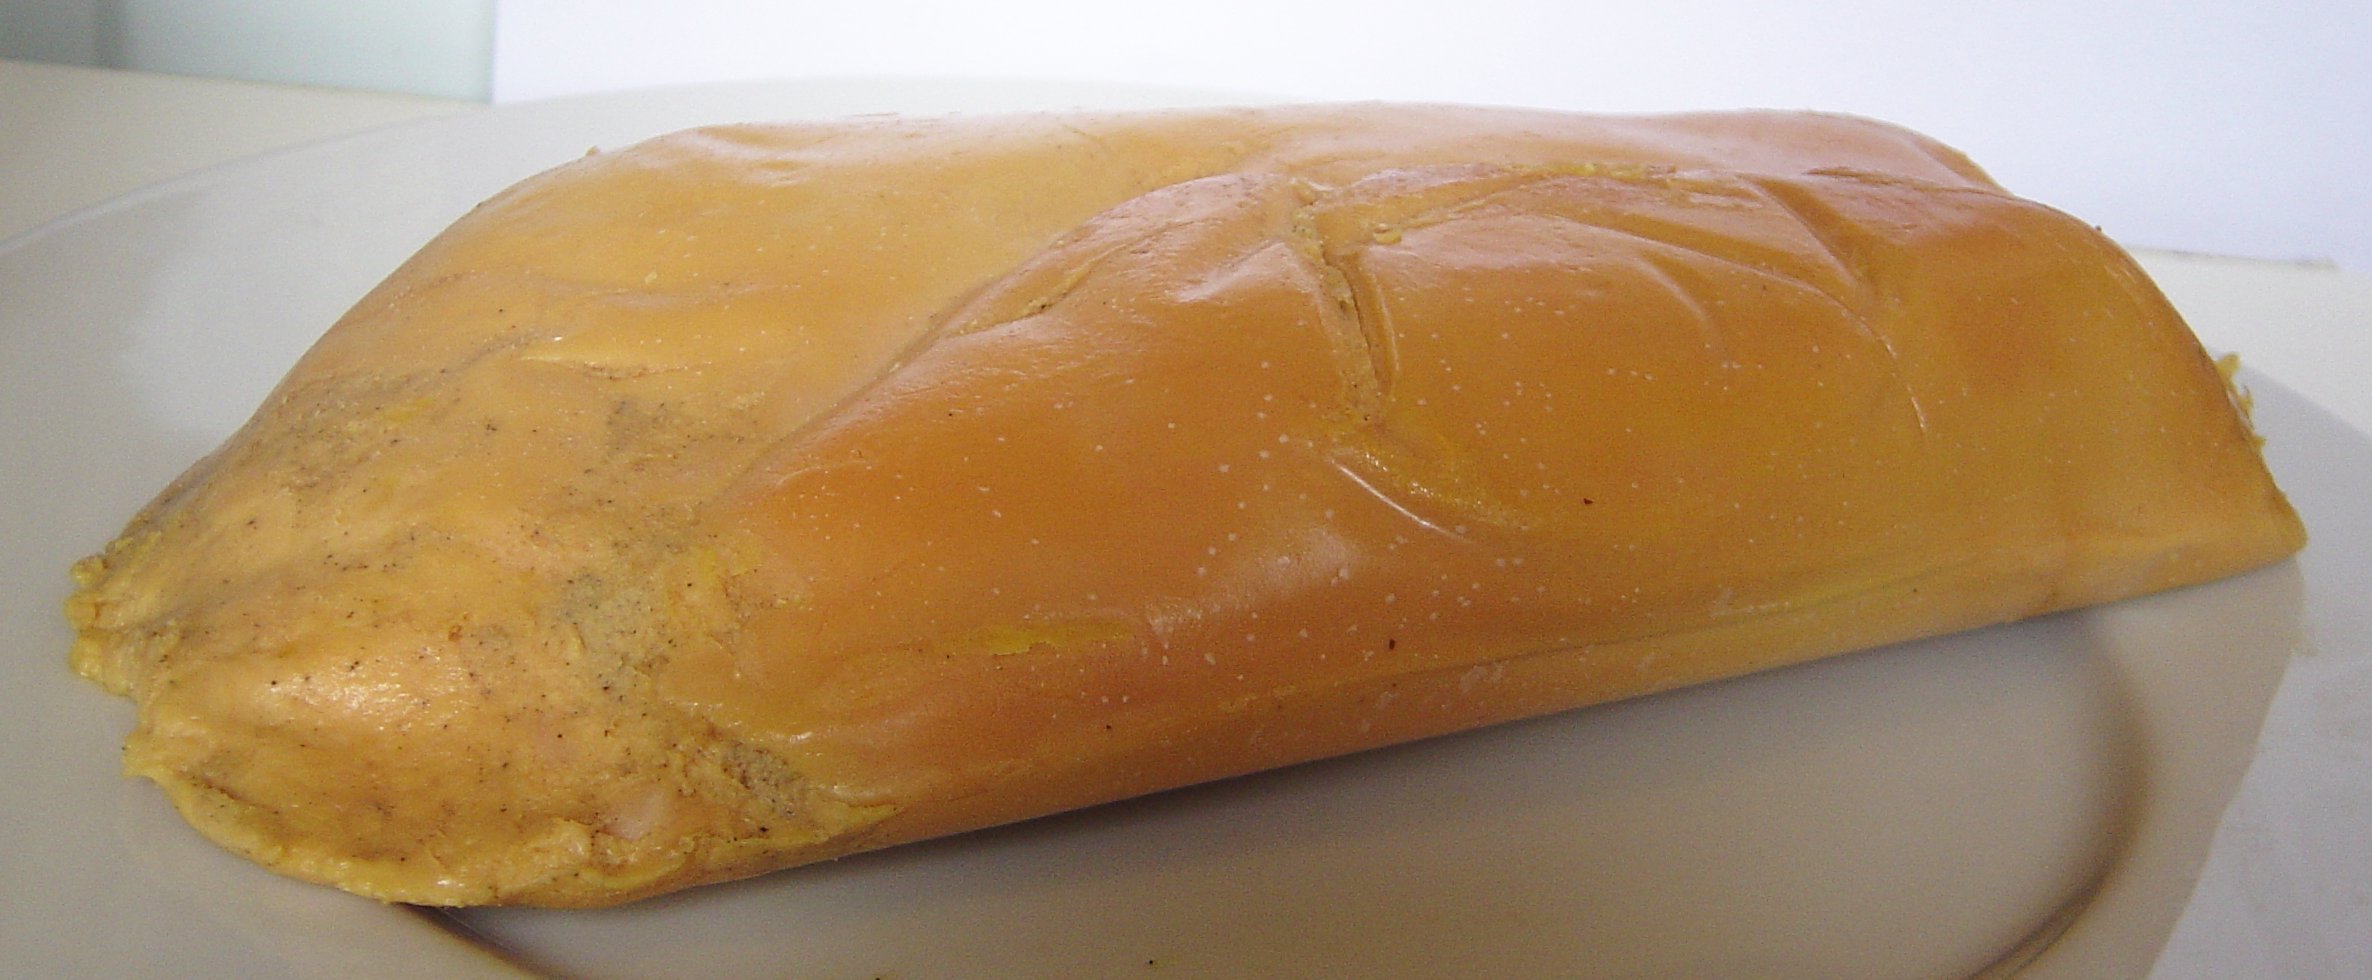 Datei:Foie gras DSC00180.jpg